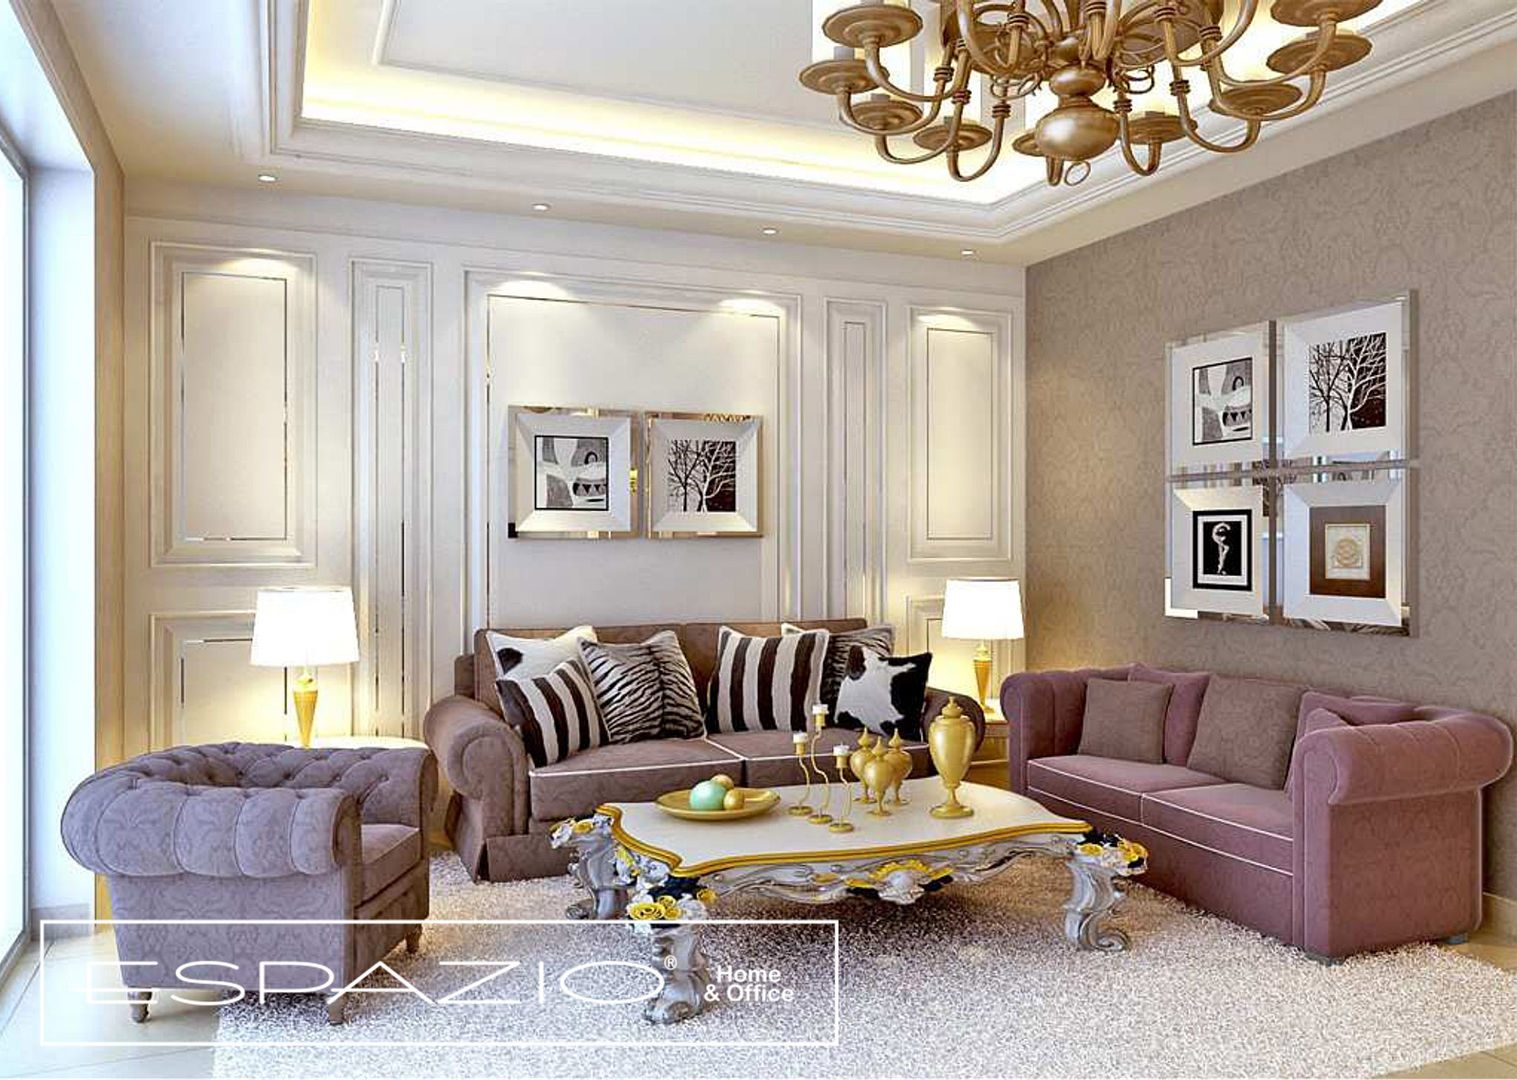 Apartamento de Luxo, Espazio - Home & Office Espazio - Home & Office Salon classique